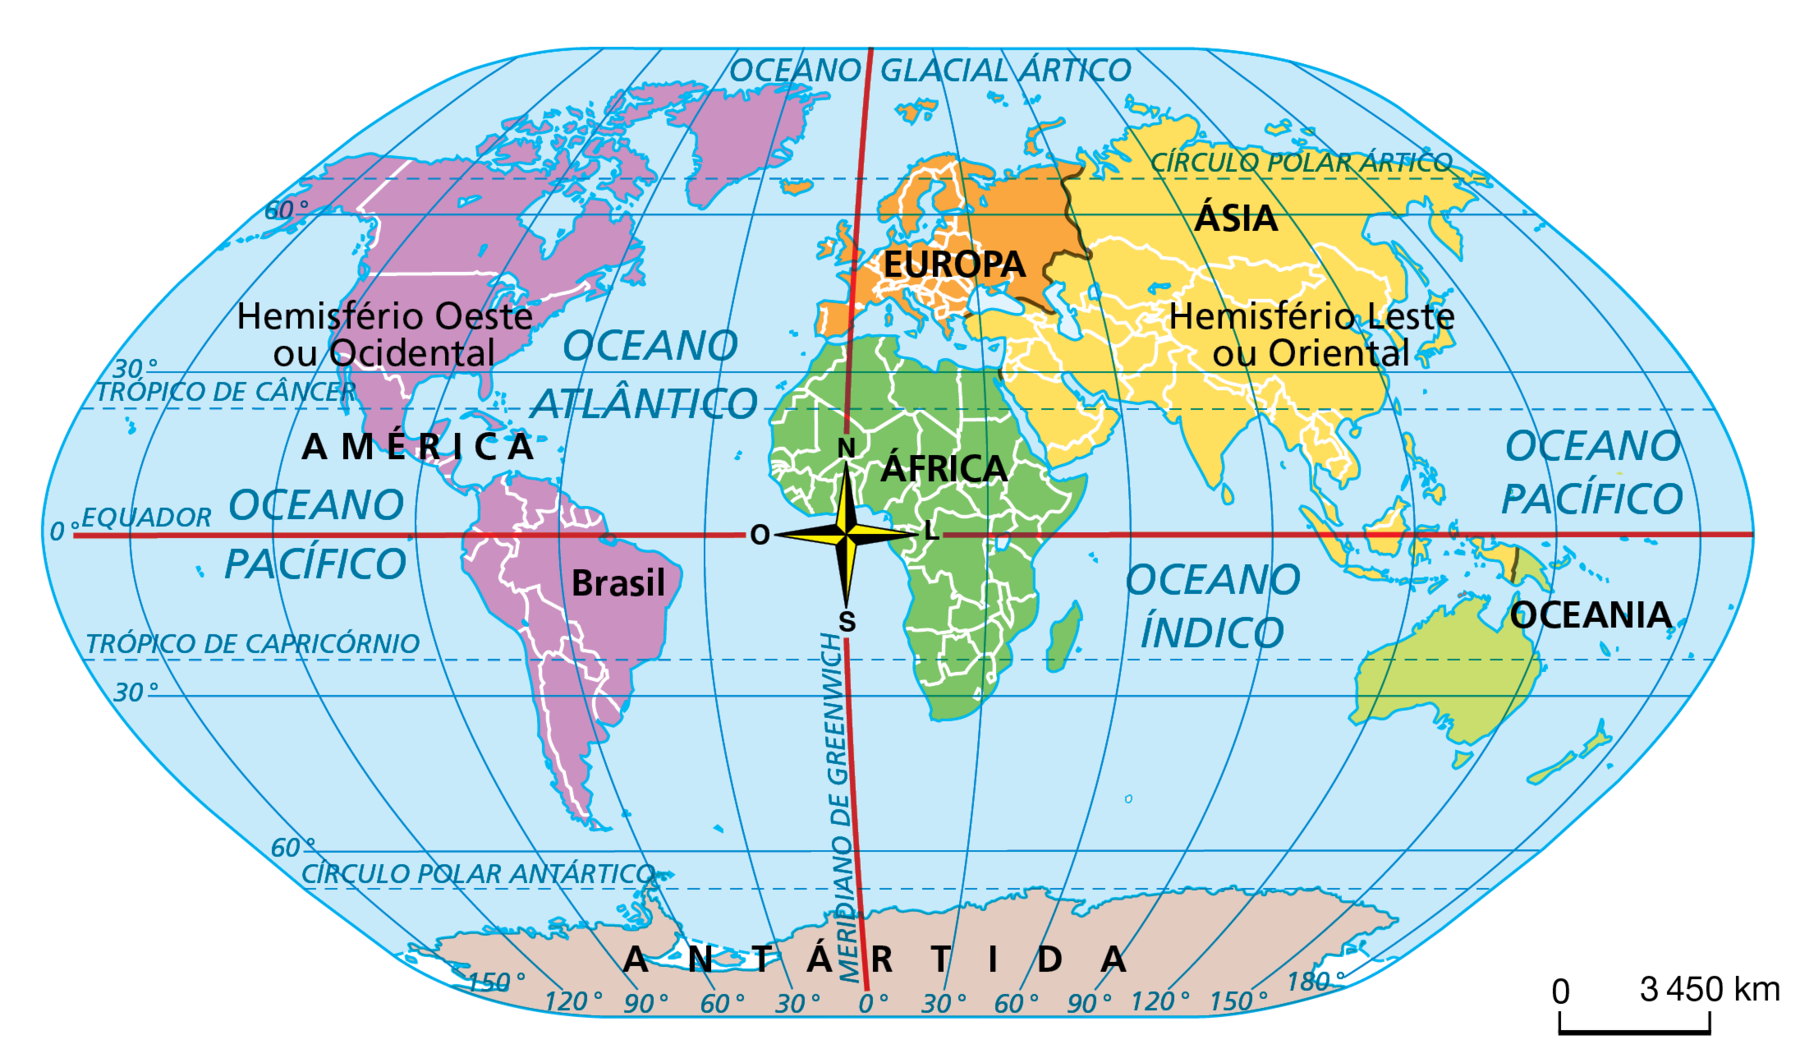 Mapa. Mundo: paralelos e meridianos. Planisfério com as linhas imaginárias traçadas; destaque para o paralelo do Equador, Meridiano de Greenwich e continentes. Há uma rosa dos ventos indicando os pontos cardeais no cento do planisfério, sobre o cruzamento entre o Equador e o Meridiano de Greenwich. À oeste do Meridiano de Greenwich, ou Hemisfério Oeste ou Ocidental, estão o continente americano, pequena parte da Europa e da África, e cerca de metade da Antártida; à leste de Greenwich, ou hemisfério Leste ou Oriental, estão a maior parte da Europa e da África, a Ásia, a Oceania e quase metade da Antártida. 
Na parte inferior, rosa dos ventos e escala de 0 a 3.450 quilômetros.